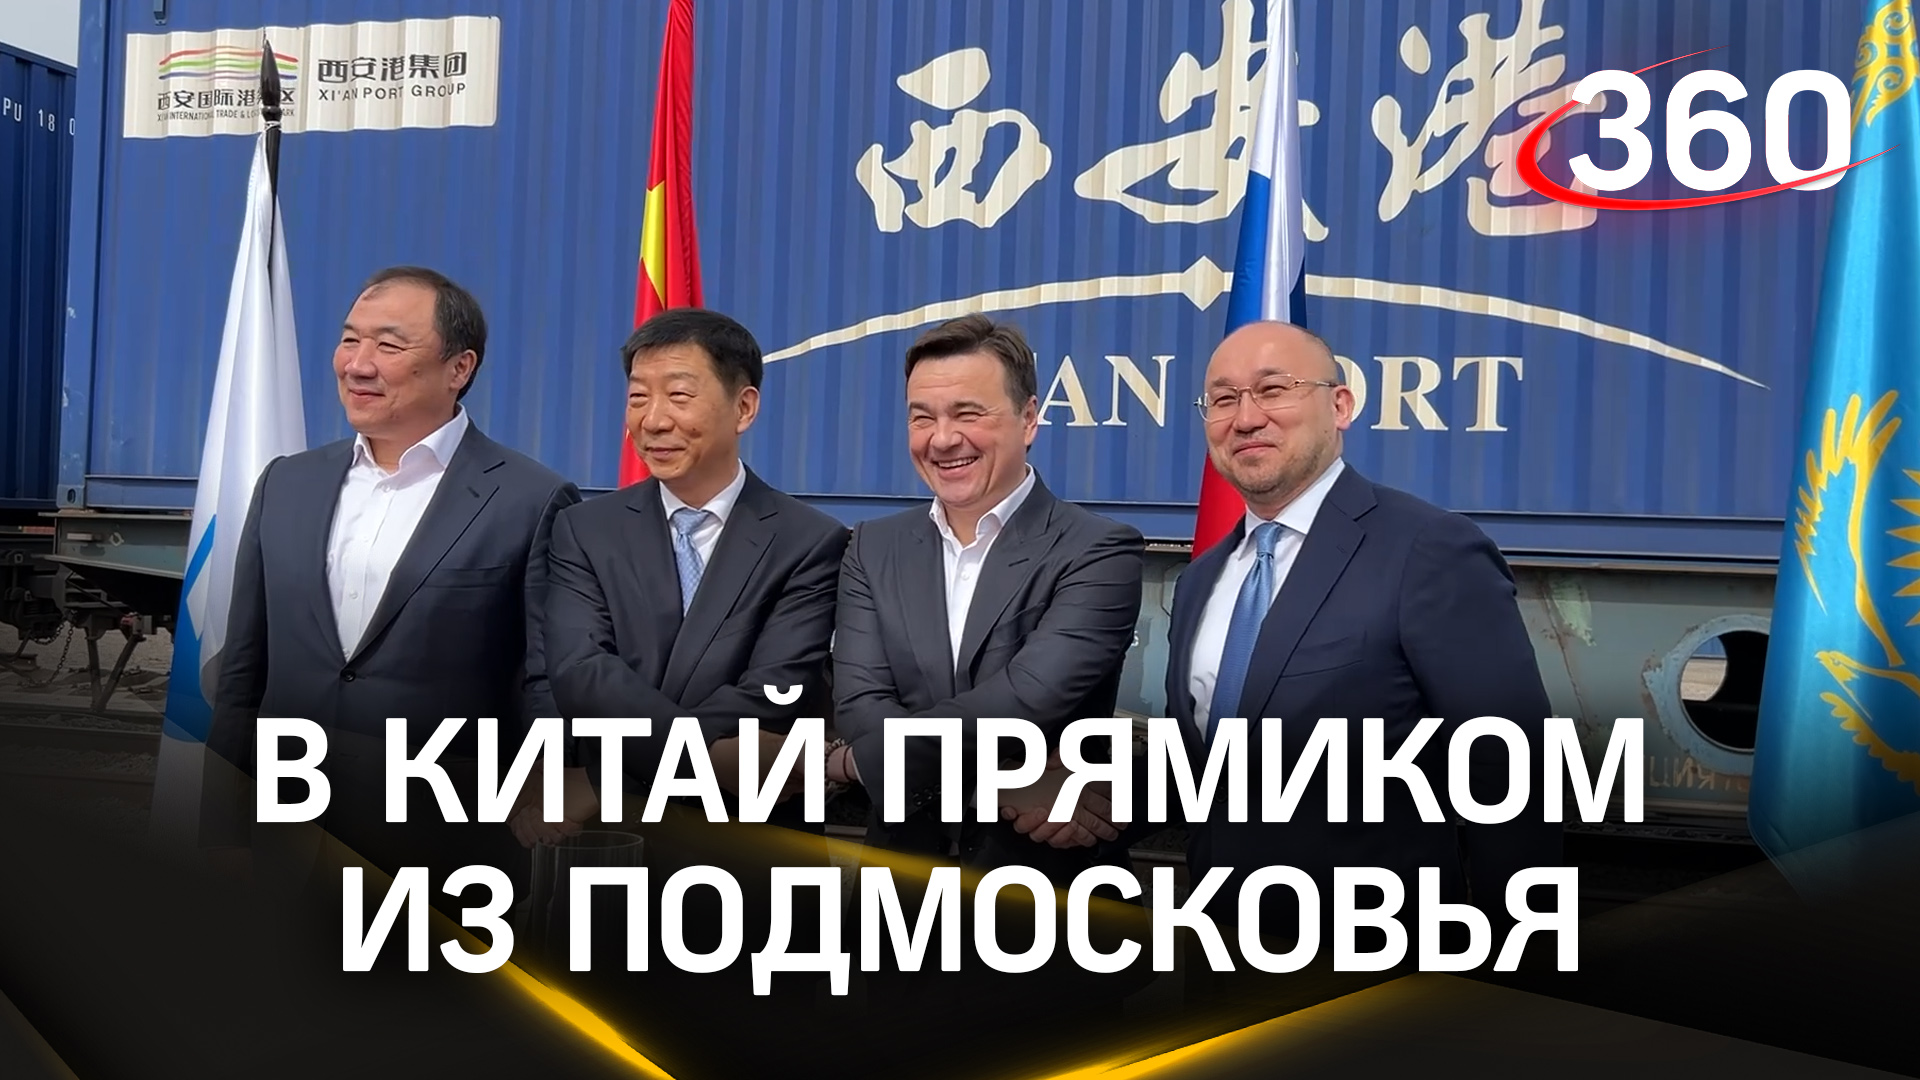 В Китай из Подмосковья. Как «Селятино» объединило Россию, КНР и Казахстан